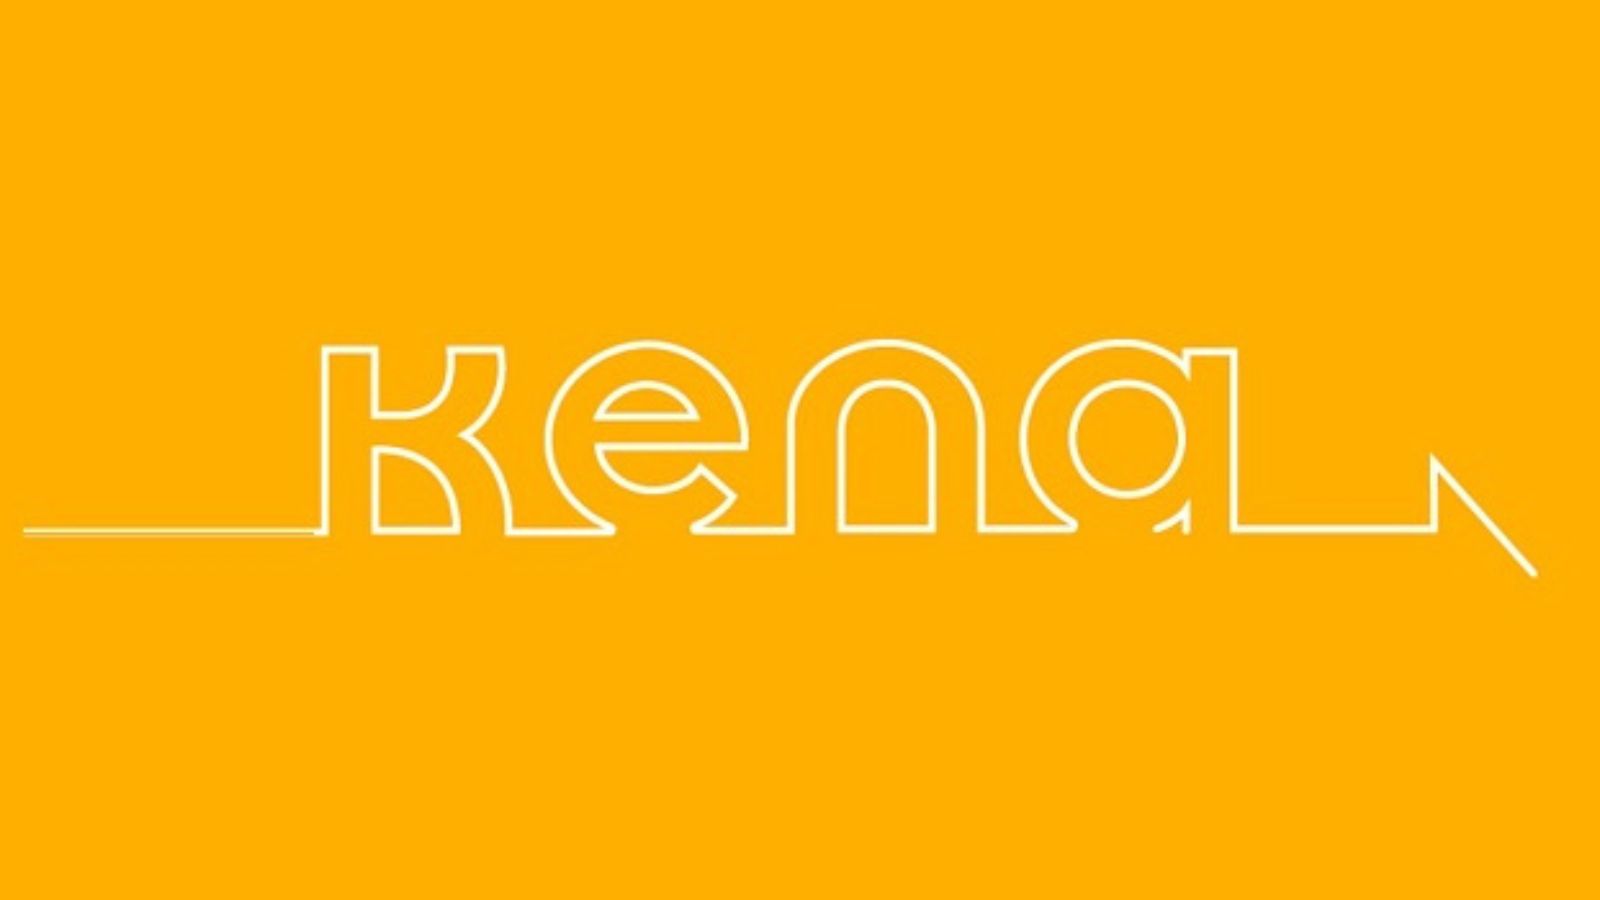 Scopri i benefici a lungo termine e le sorprese gradite inclusi nell'offerta Kena Mobile.